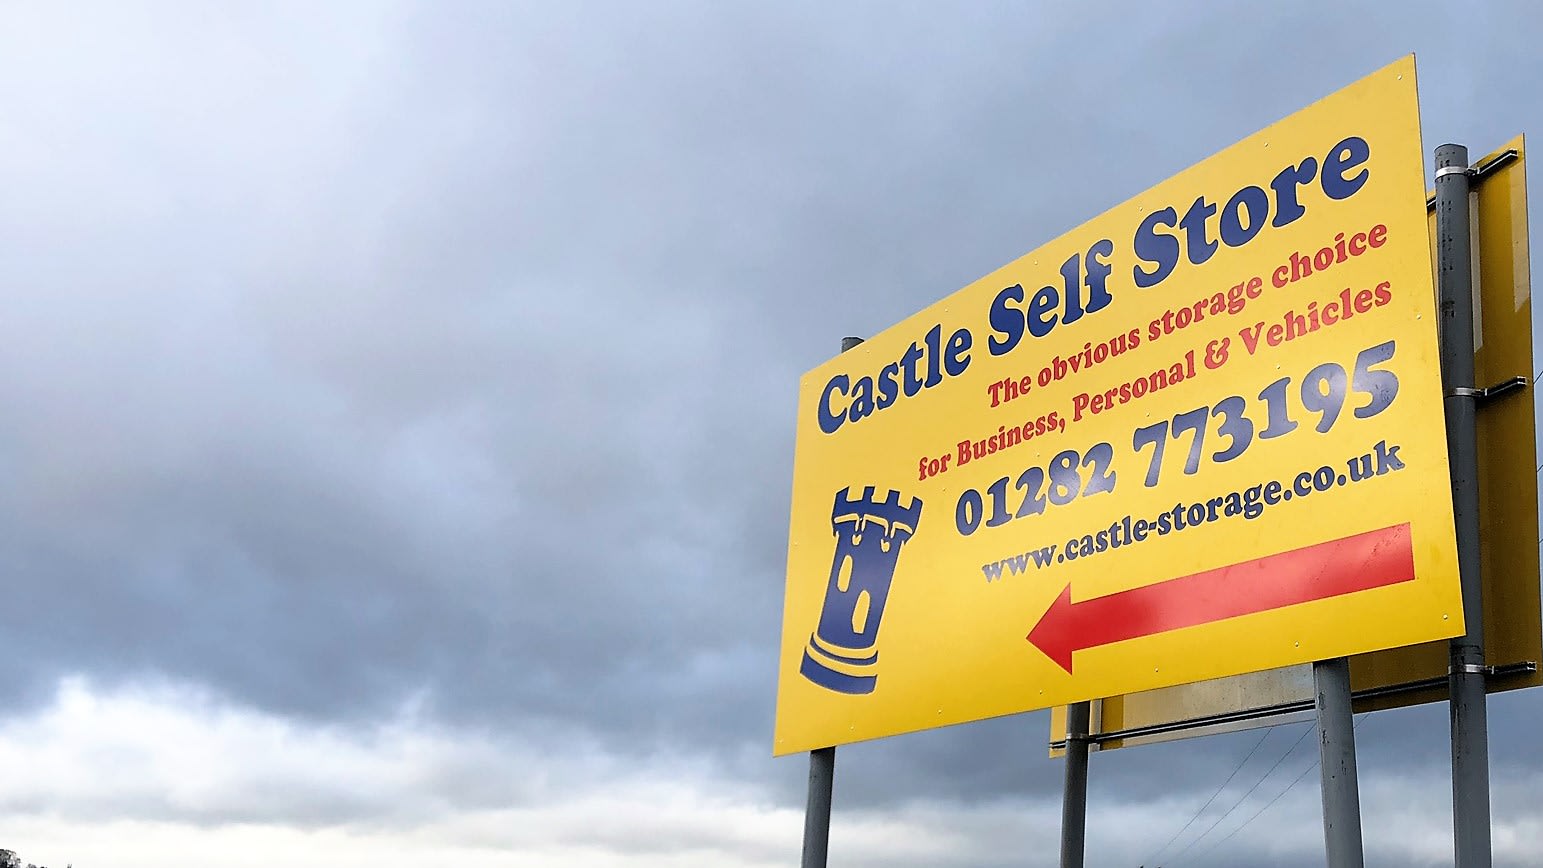 Images Castle Self Store Ltd